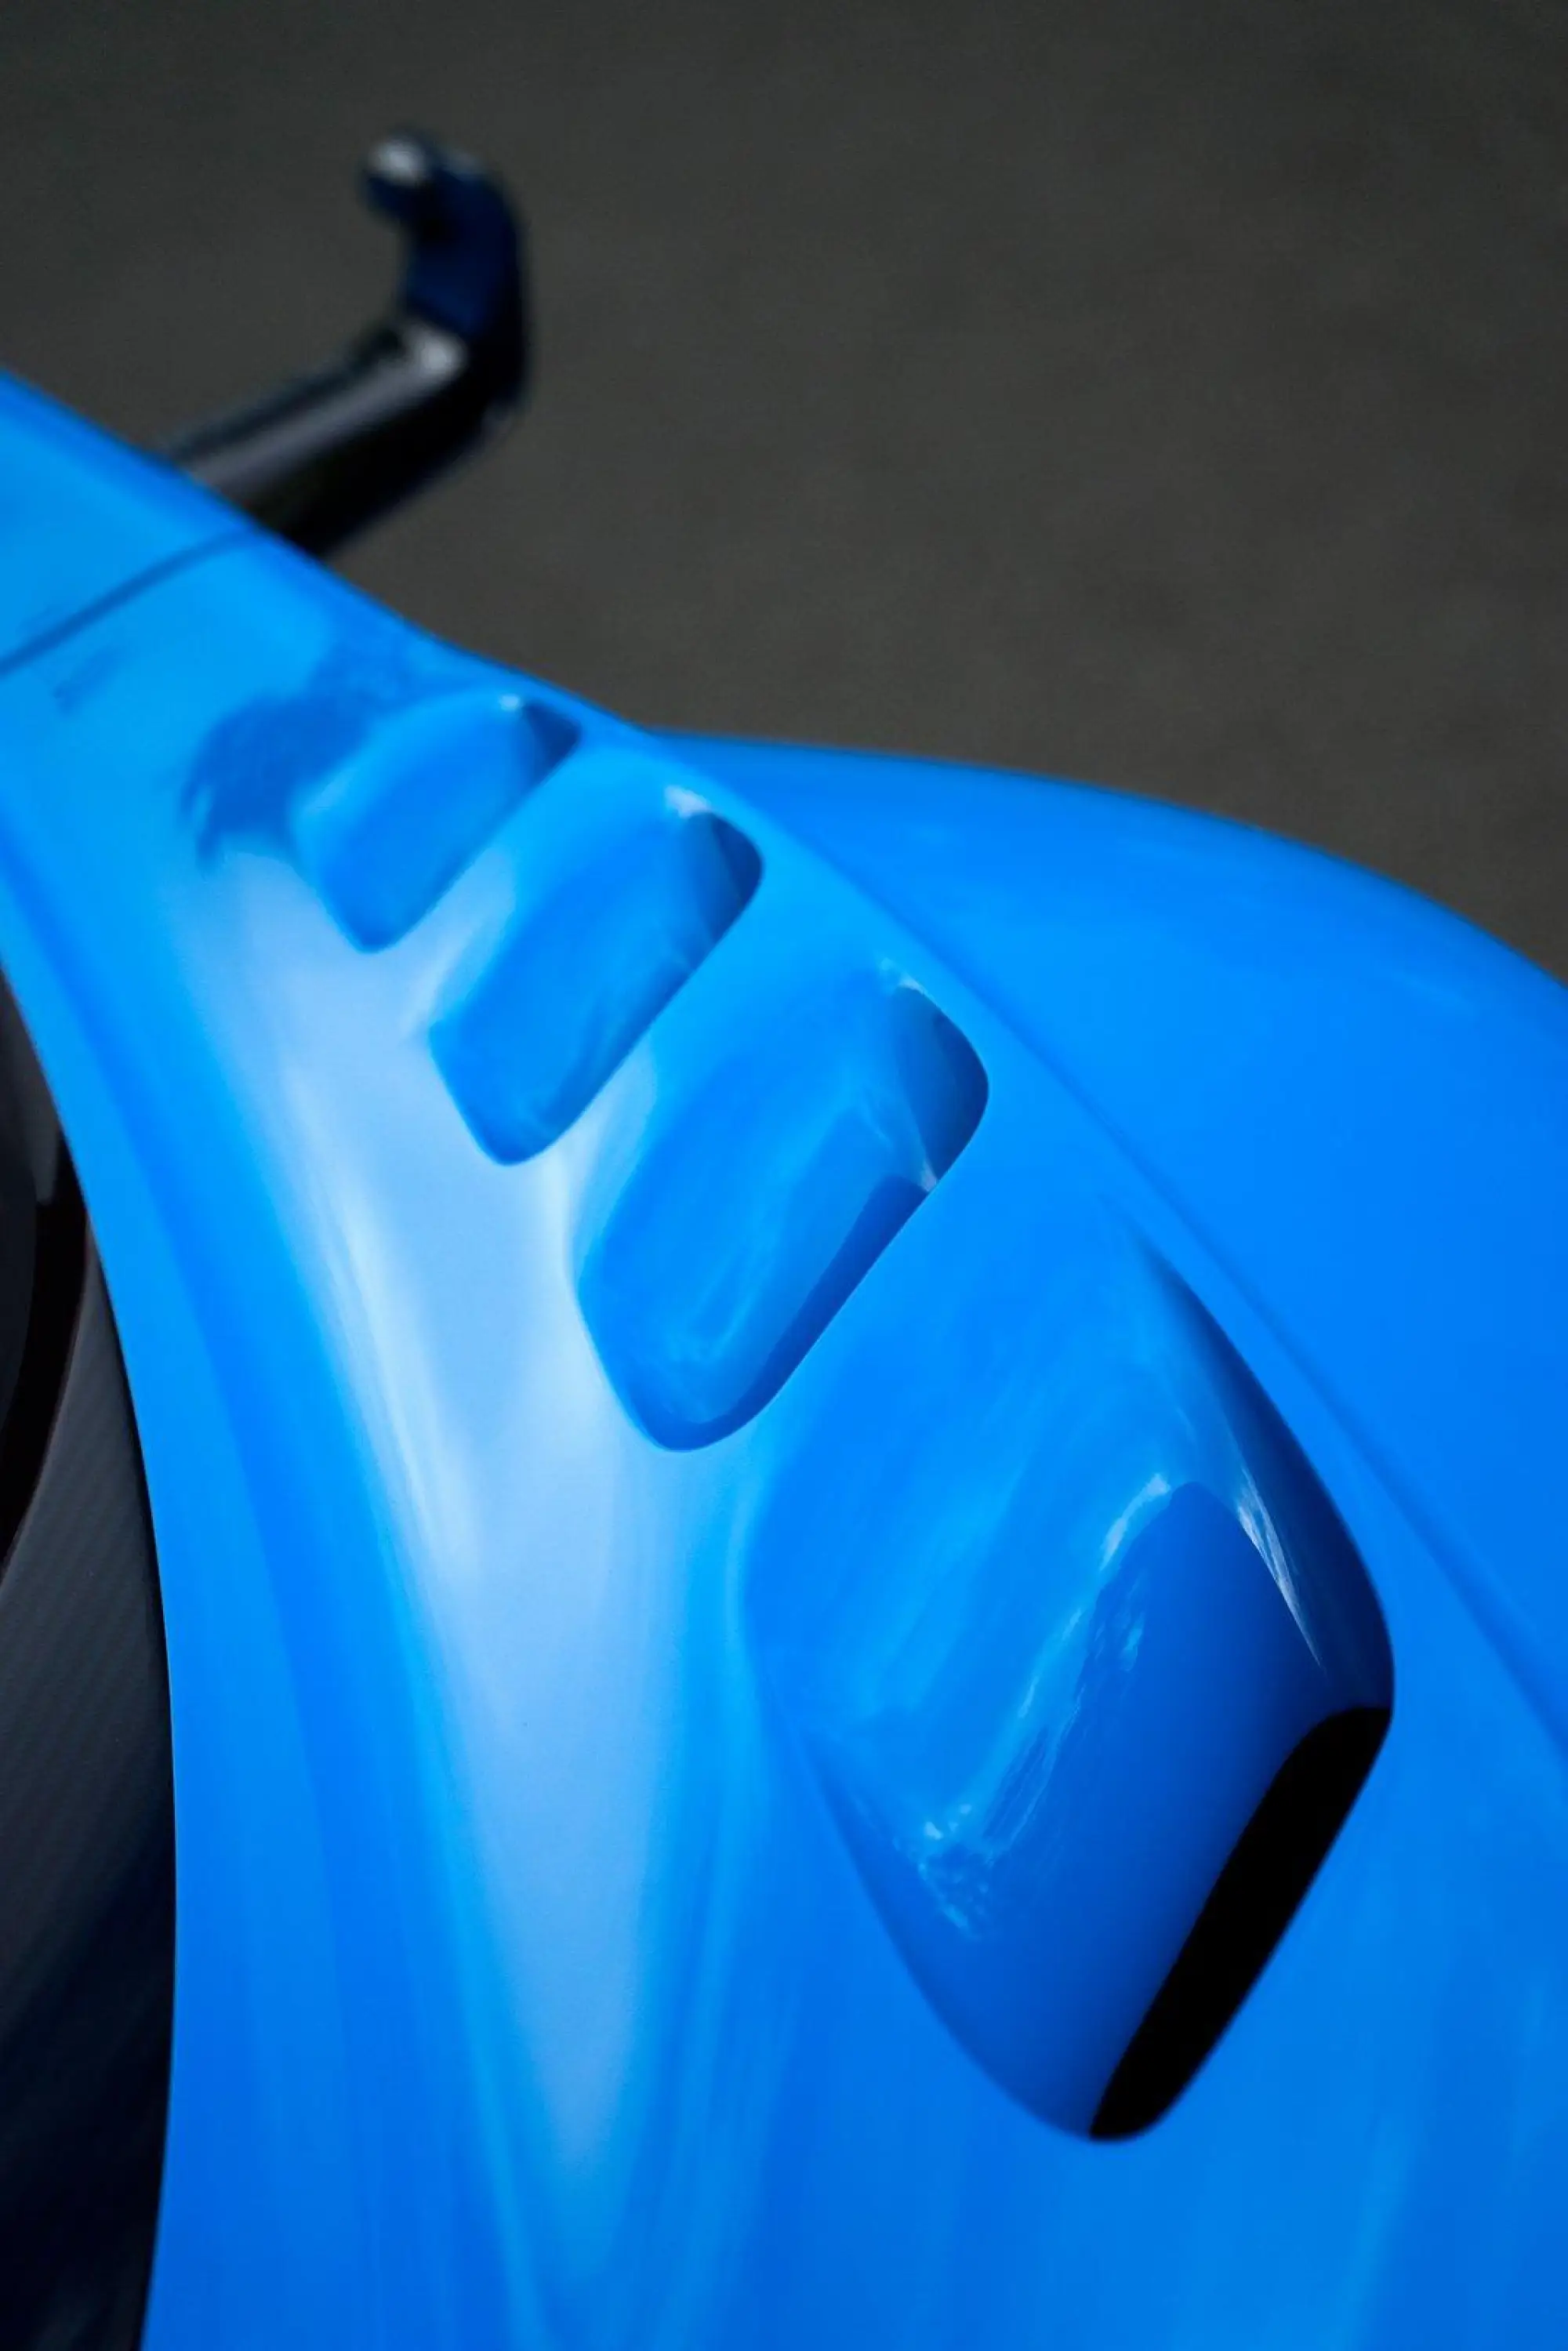 Bugatti Vision Gran Turismo - 59